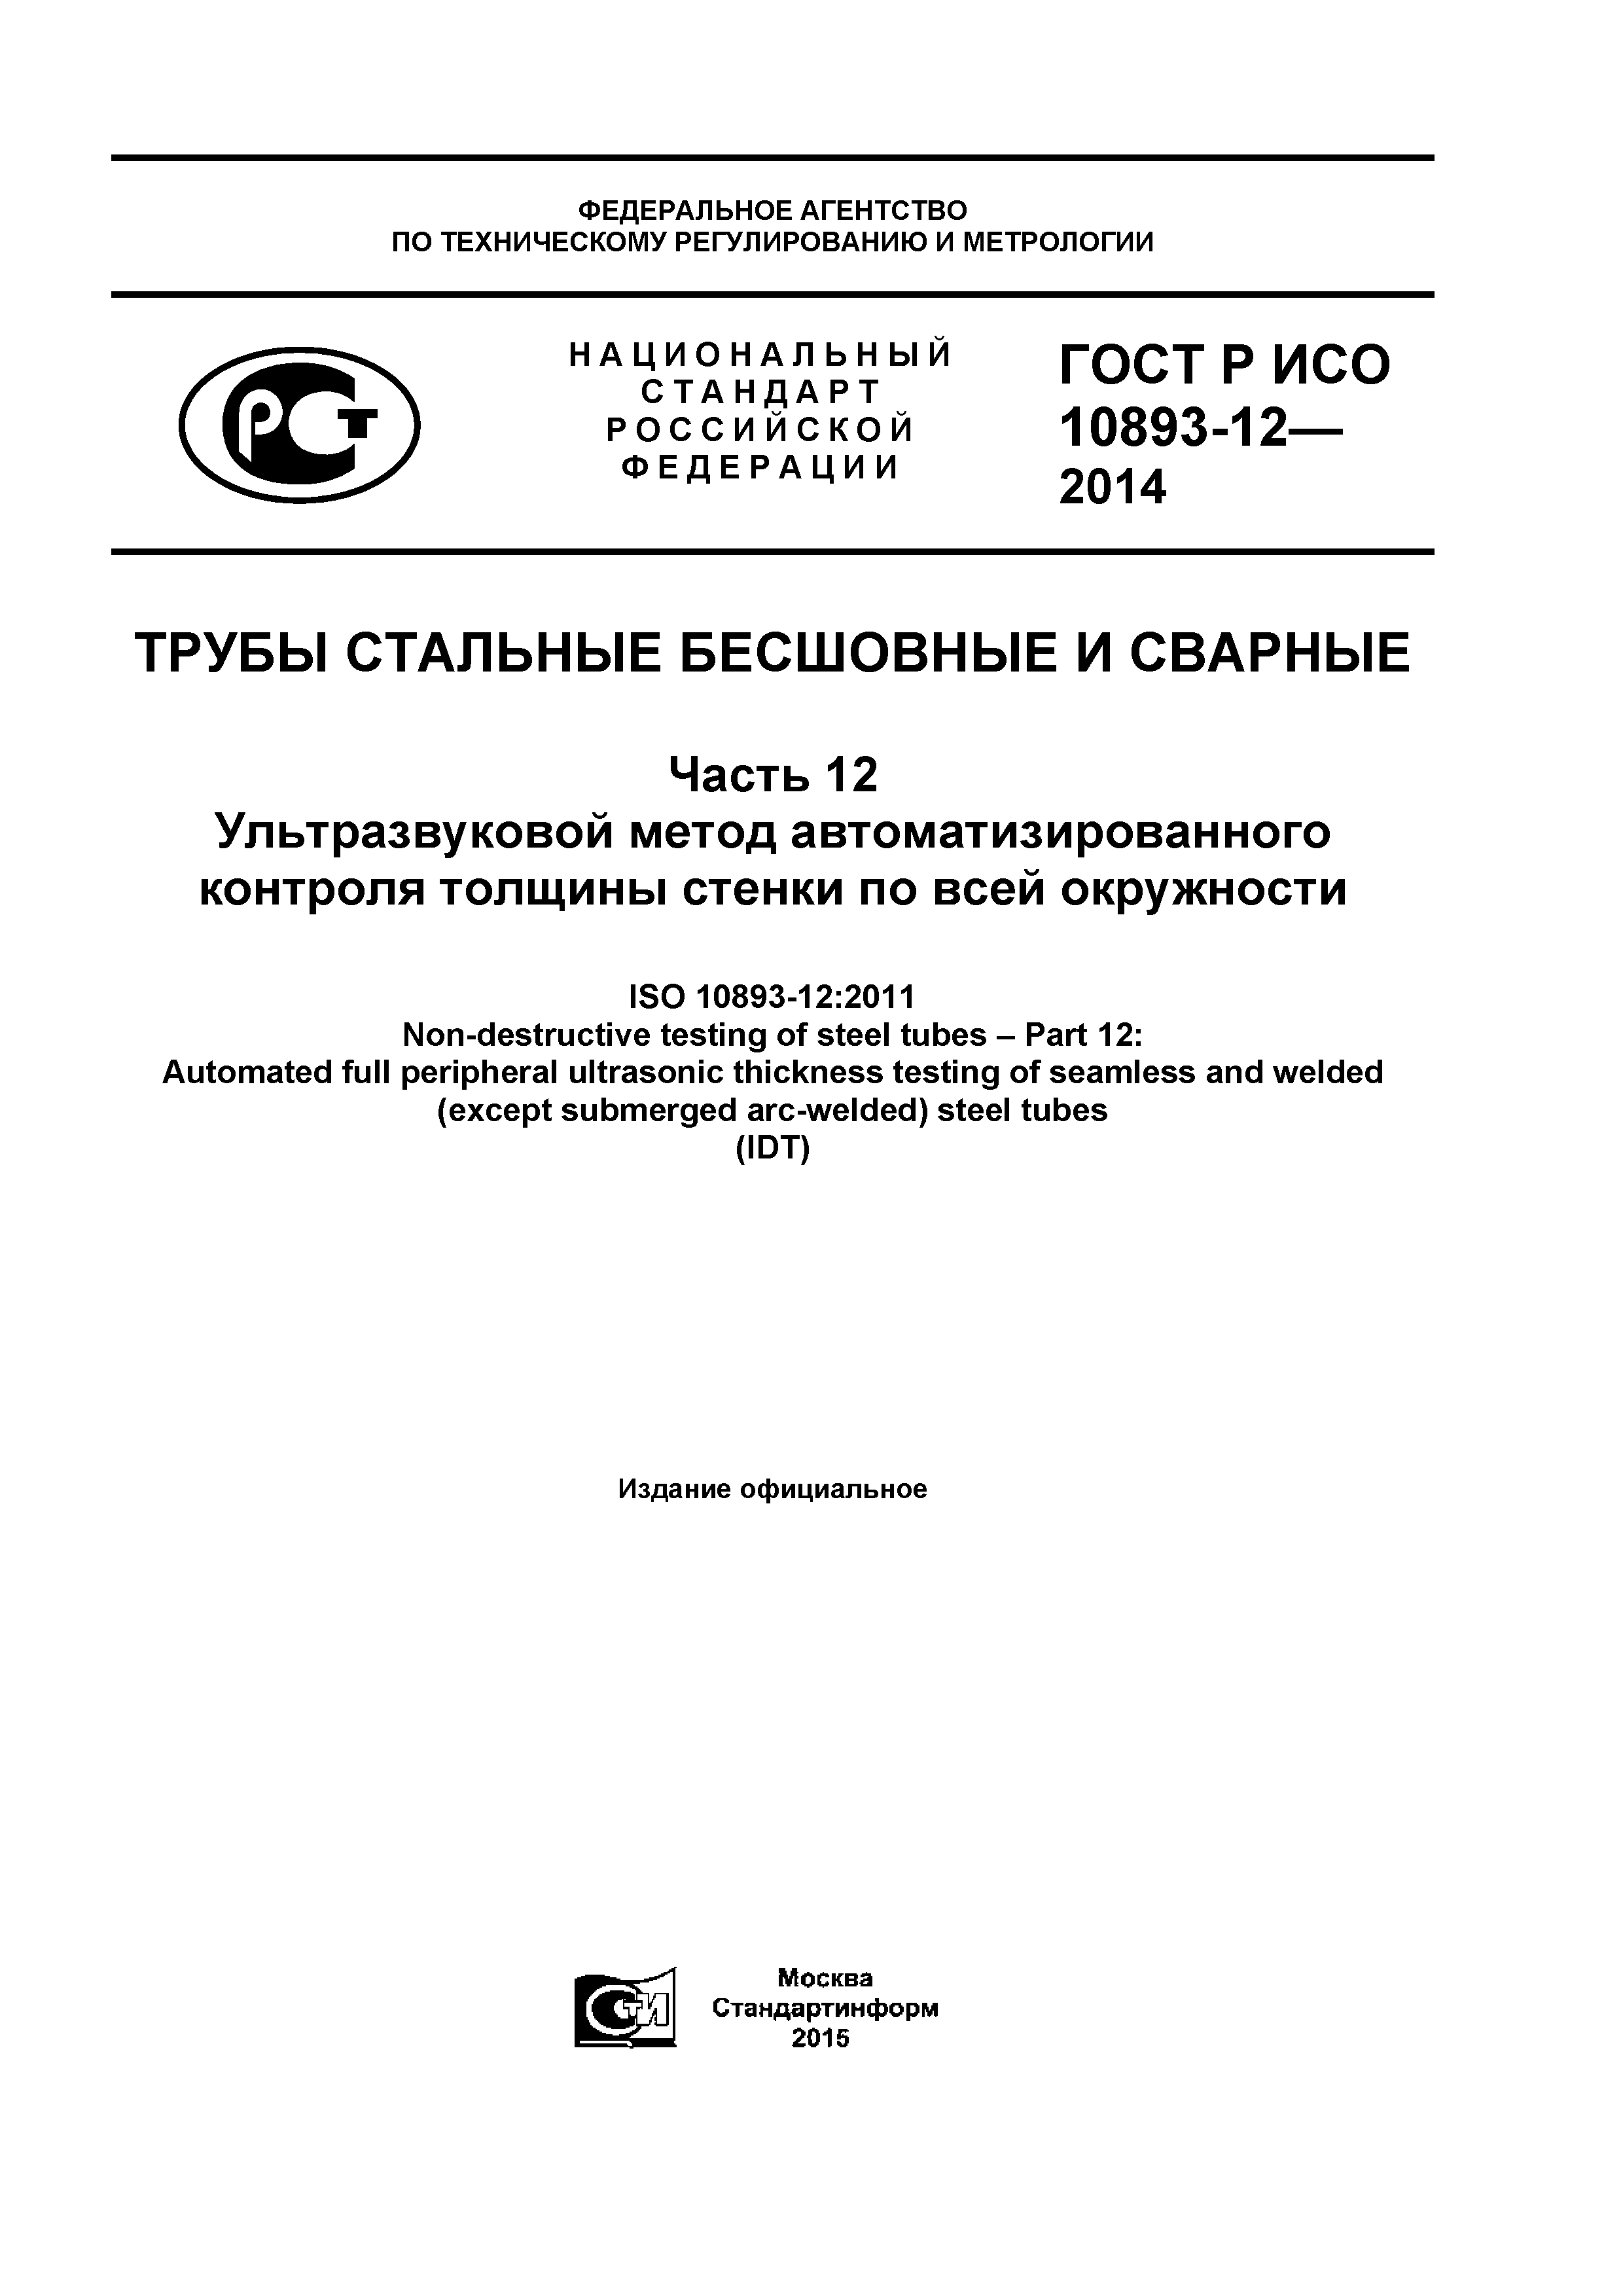 ГОСТ Р ИСО 10893-12-2014